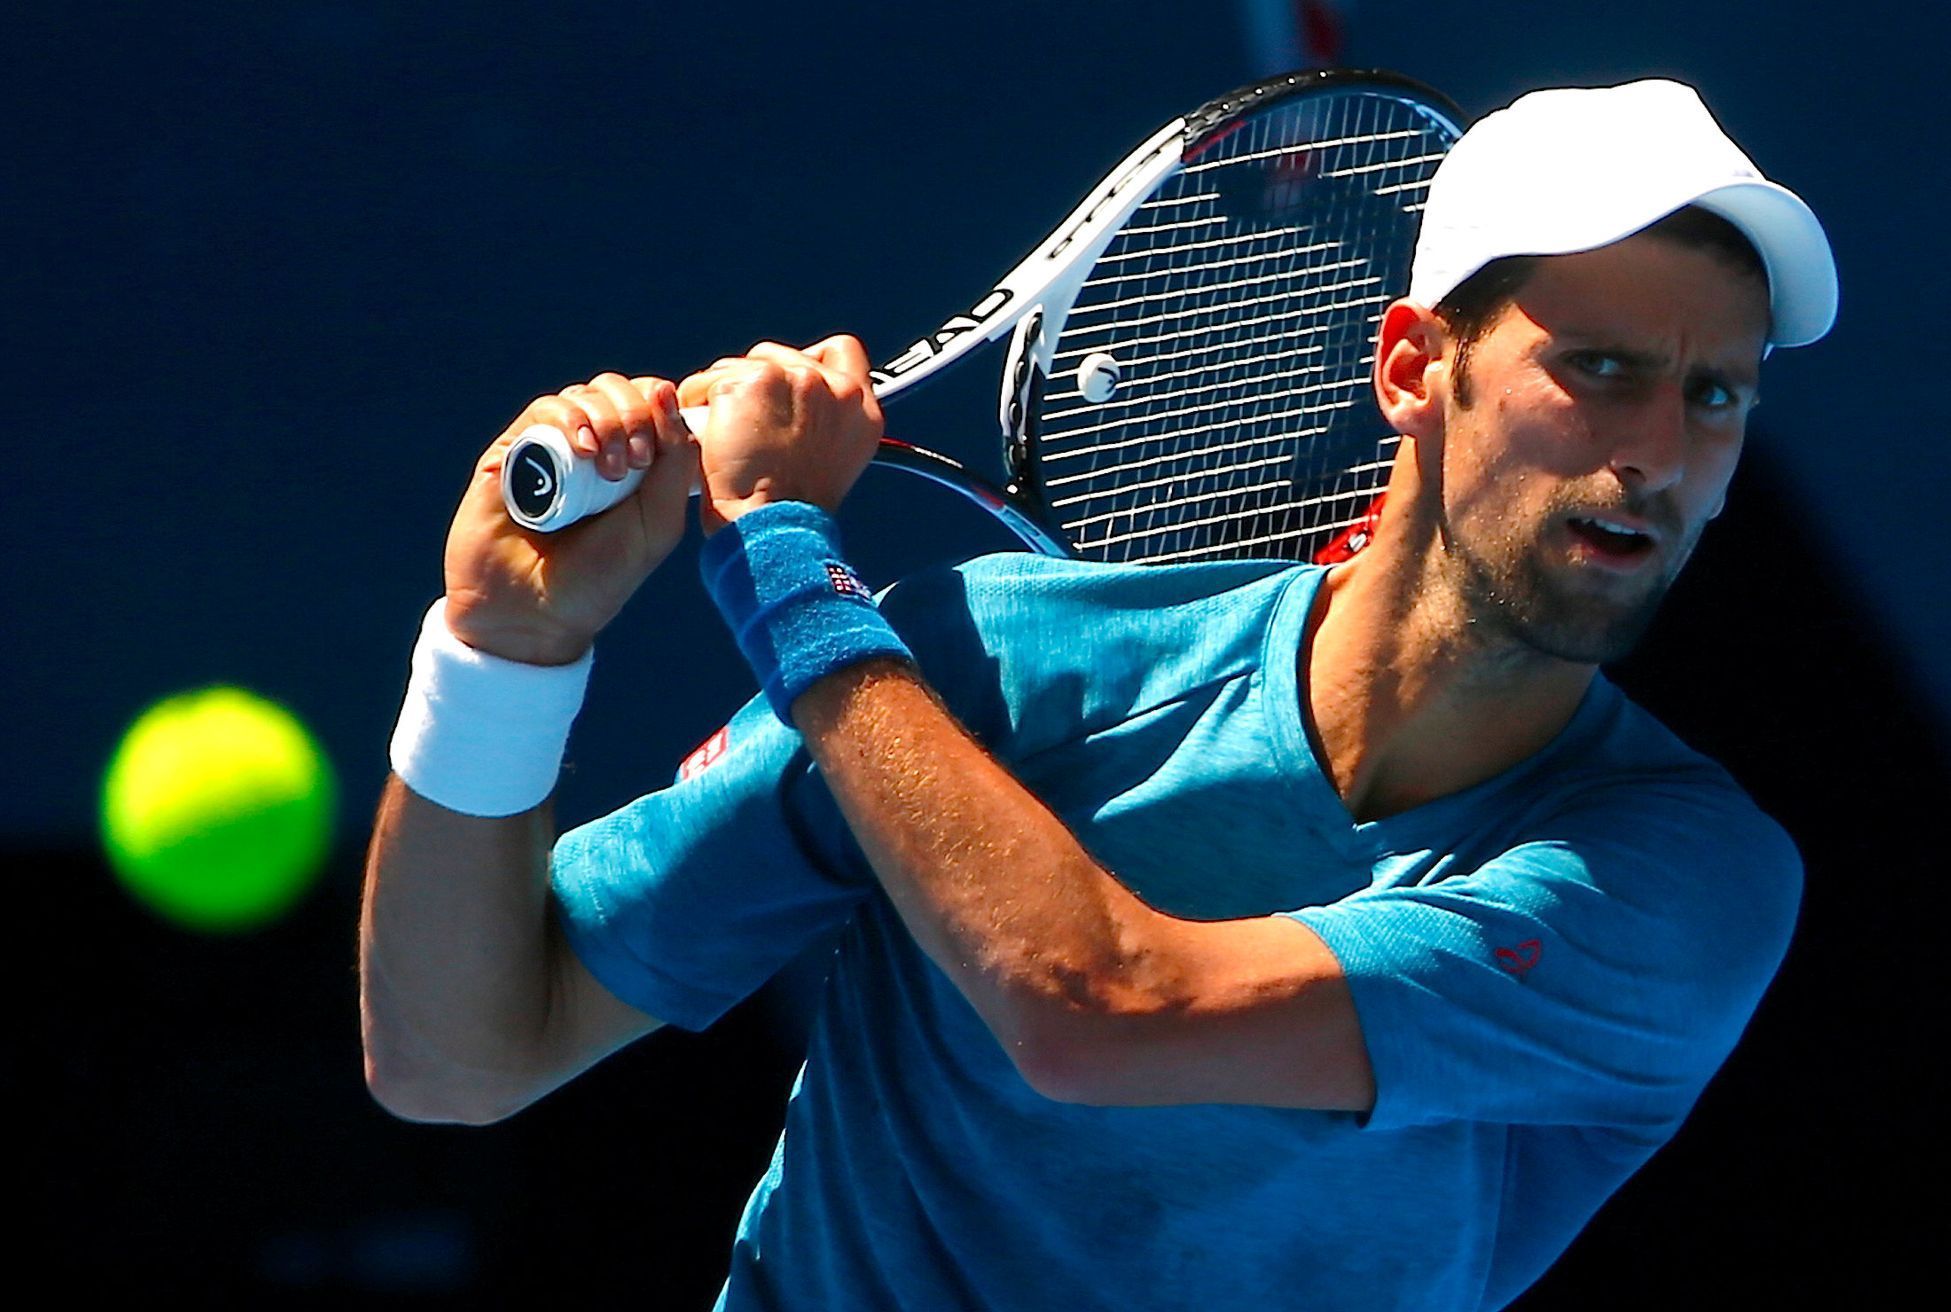 Novak Djokovič před Australian Open 2017